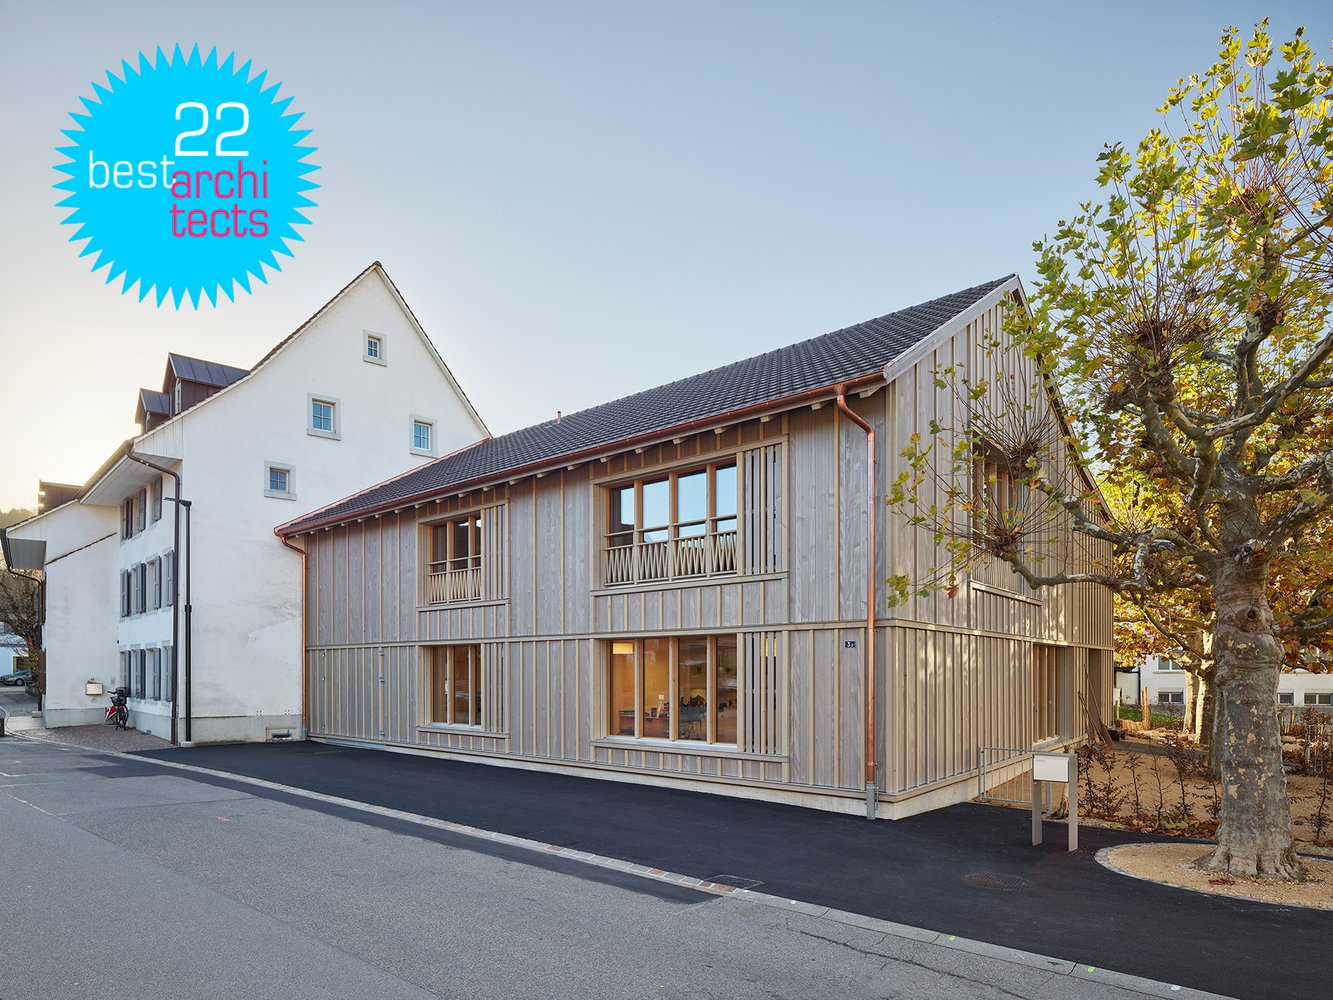 22.07.2021 Das Projekt Doppelkindergarten Sissach gewinnt die Auszeichnung "bestarchitects 22" (Sissach-Best-Architects.jpg)